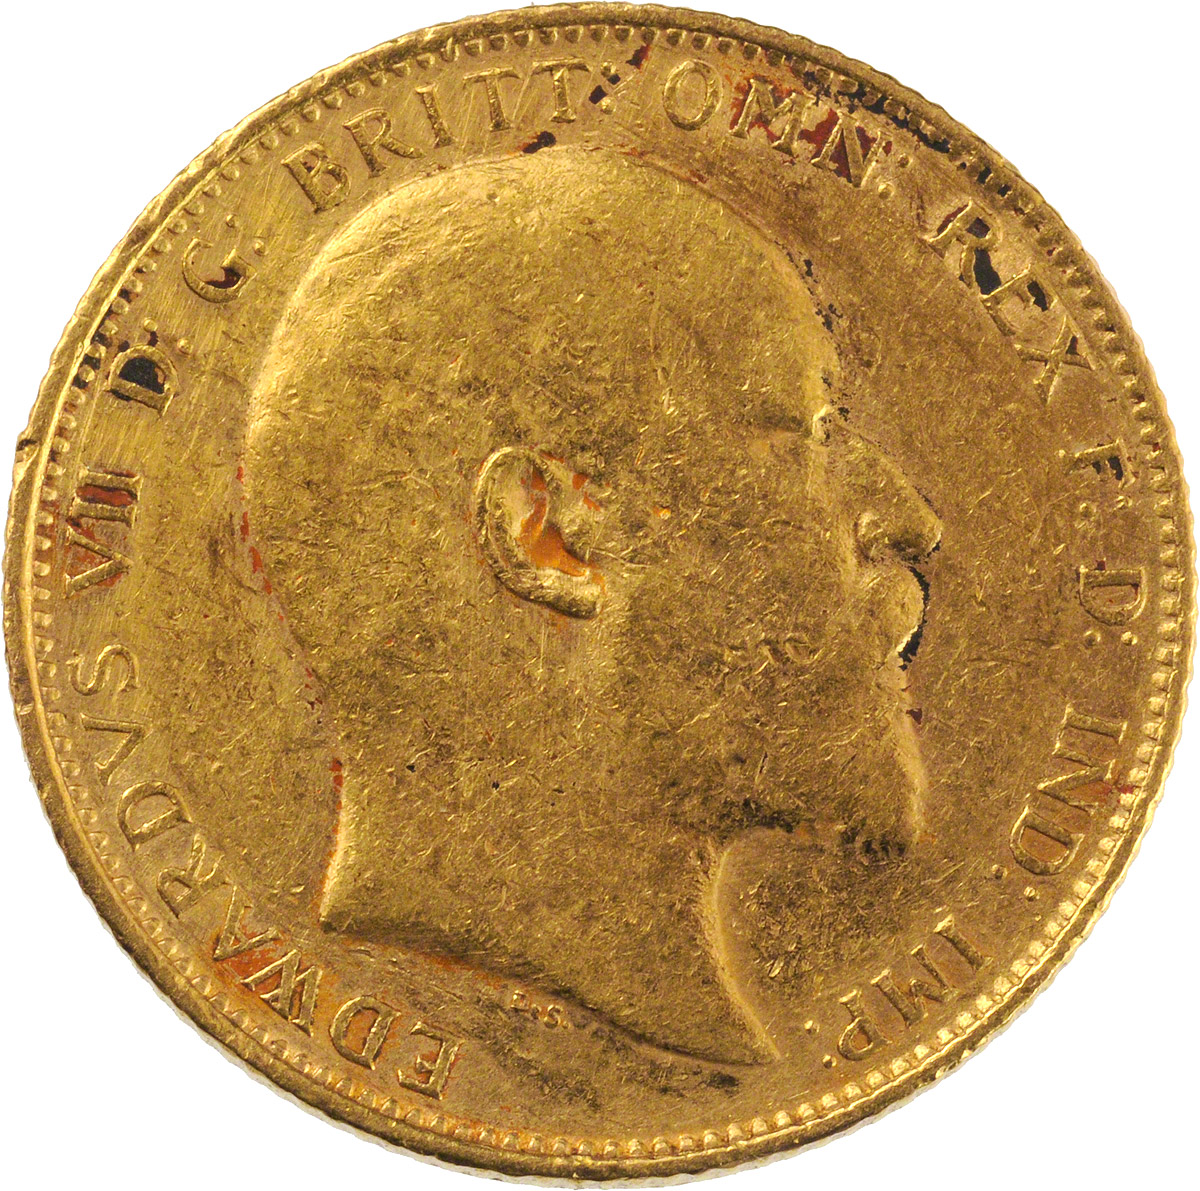 1910 Εδουάρδος Ζ’ (Νομισματοκοπείο Σίδνεϊ)